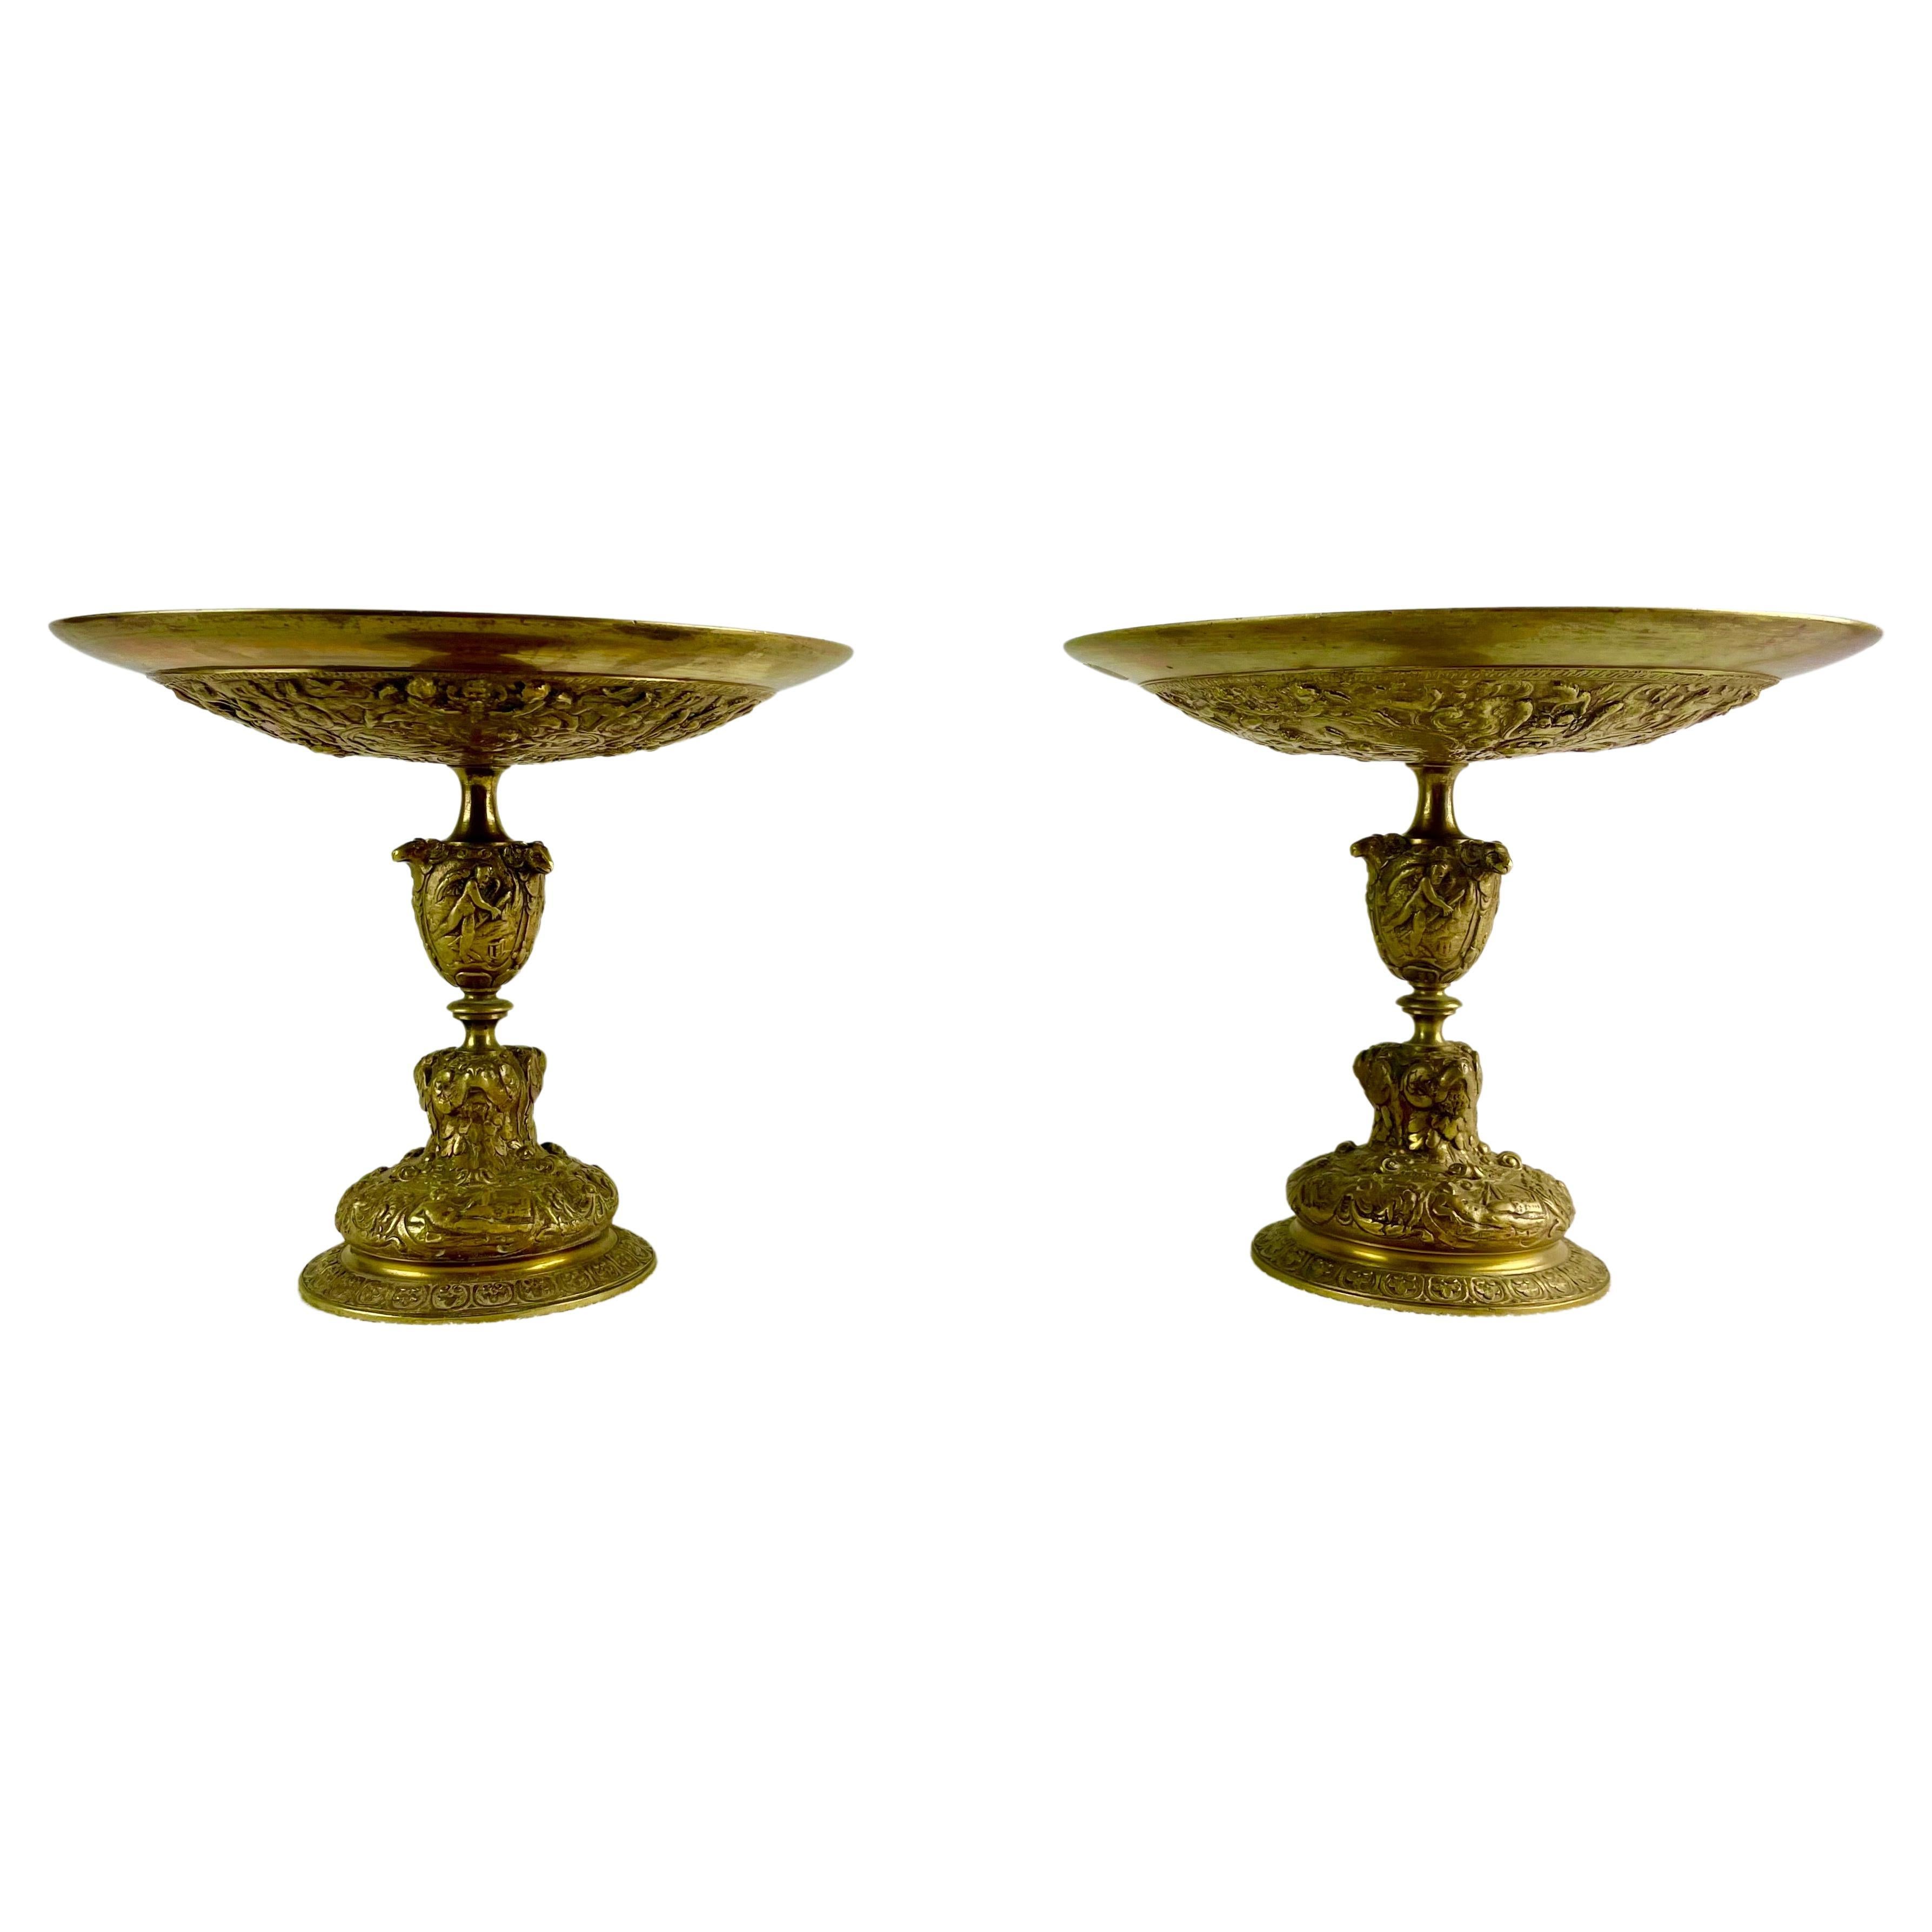 Sehr schönes Paar Tazza-Becher im Renaissance-Stil aus reich ziselierter, vergoldeter Bronze.
Dieses Tassenpaar stammt aus einer französischen Privatsammlung. Sie sind Produkte der zweiten Hälfte des 19. Jahrhunderts, einer Zeit, in der die